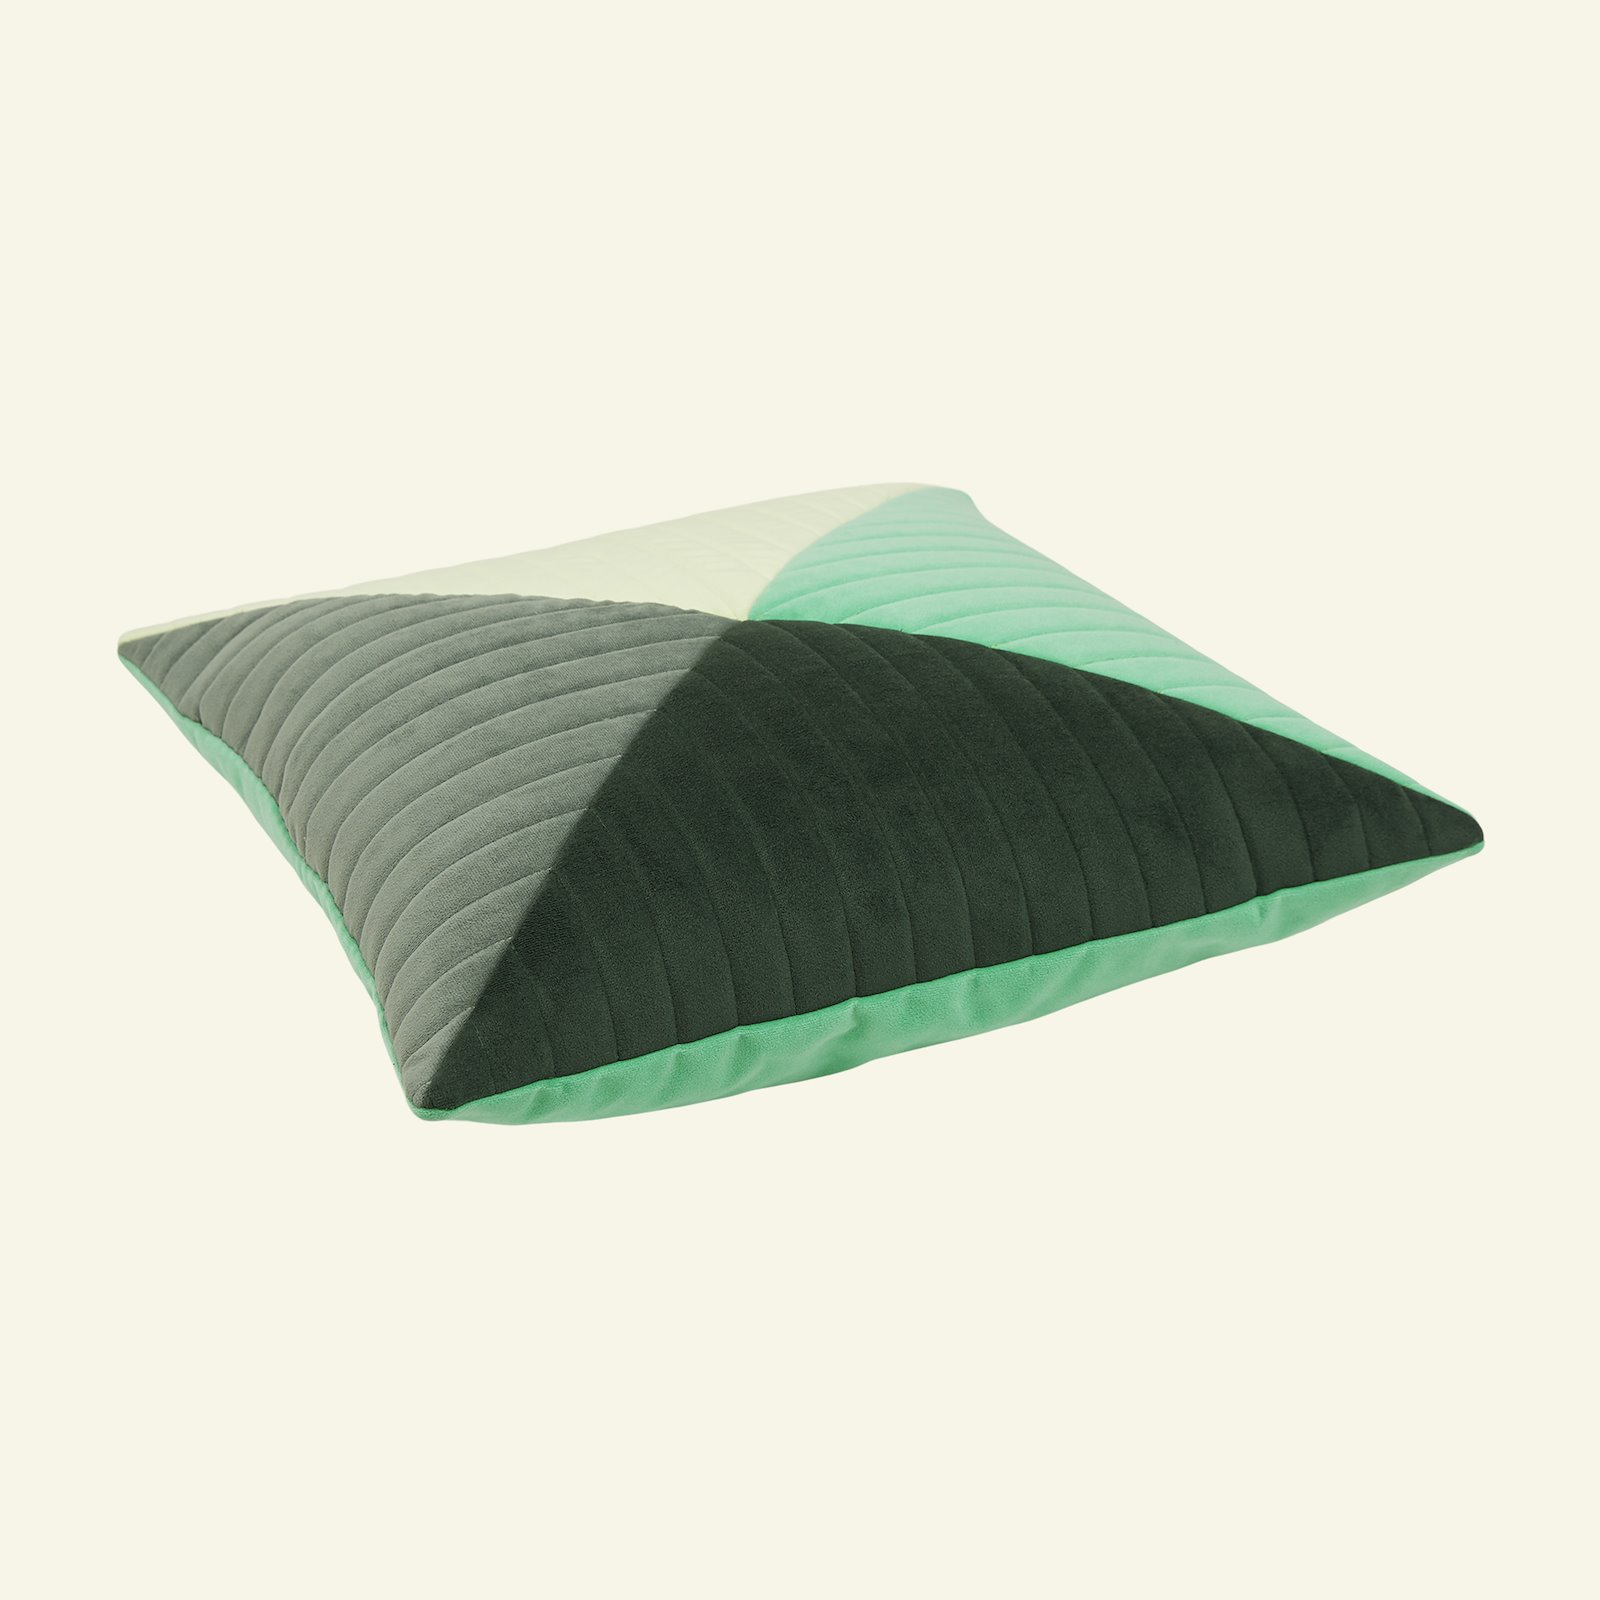 Upholstery velvet emerald green 826266_824176_822230_823595_sskit